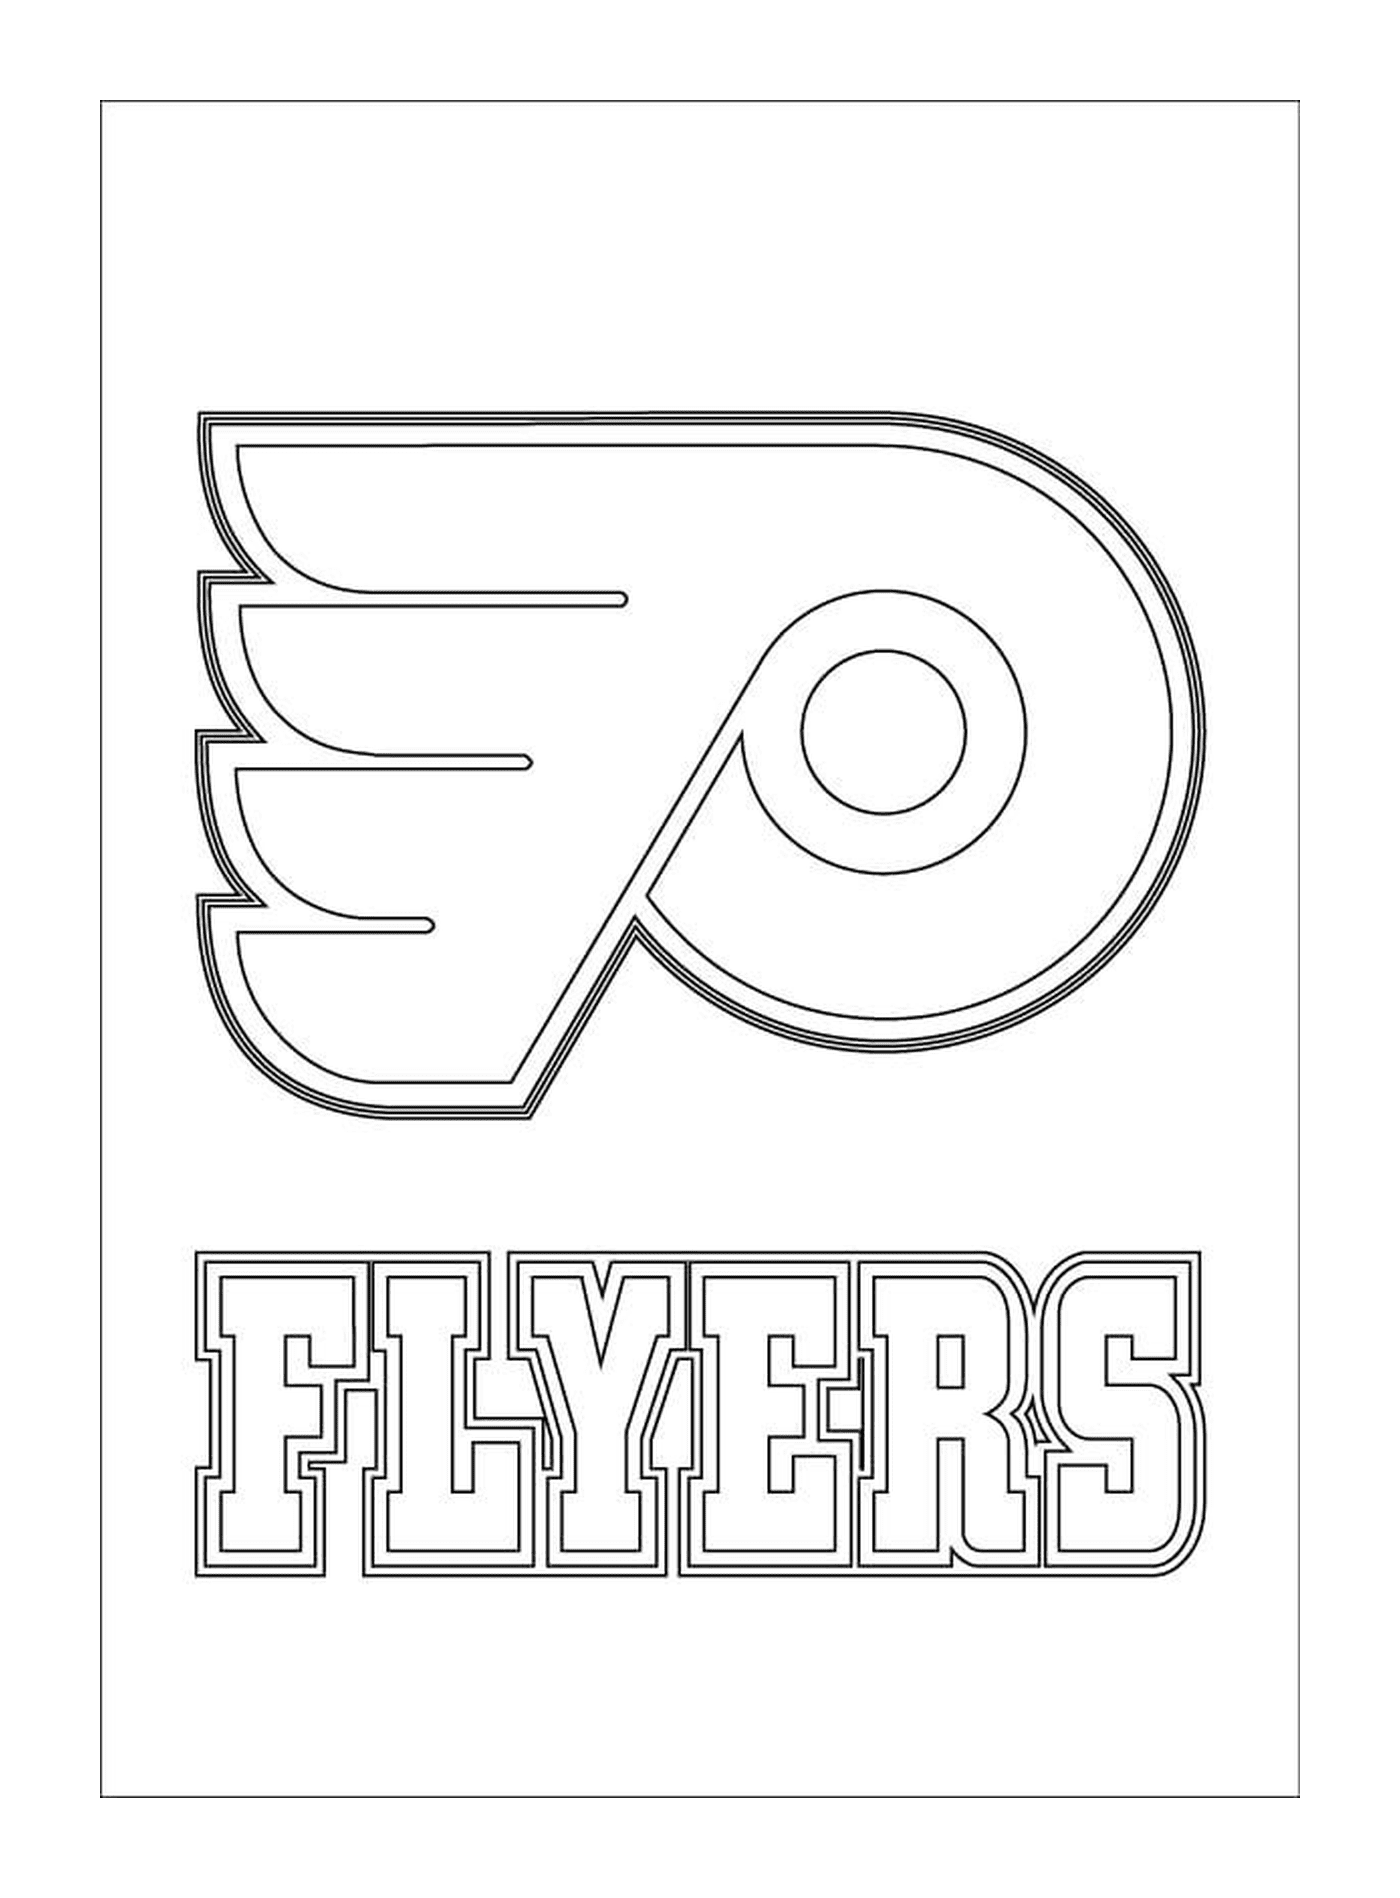  Логотип Филадельфии Флайерс 